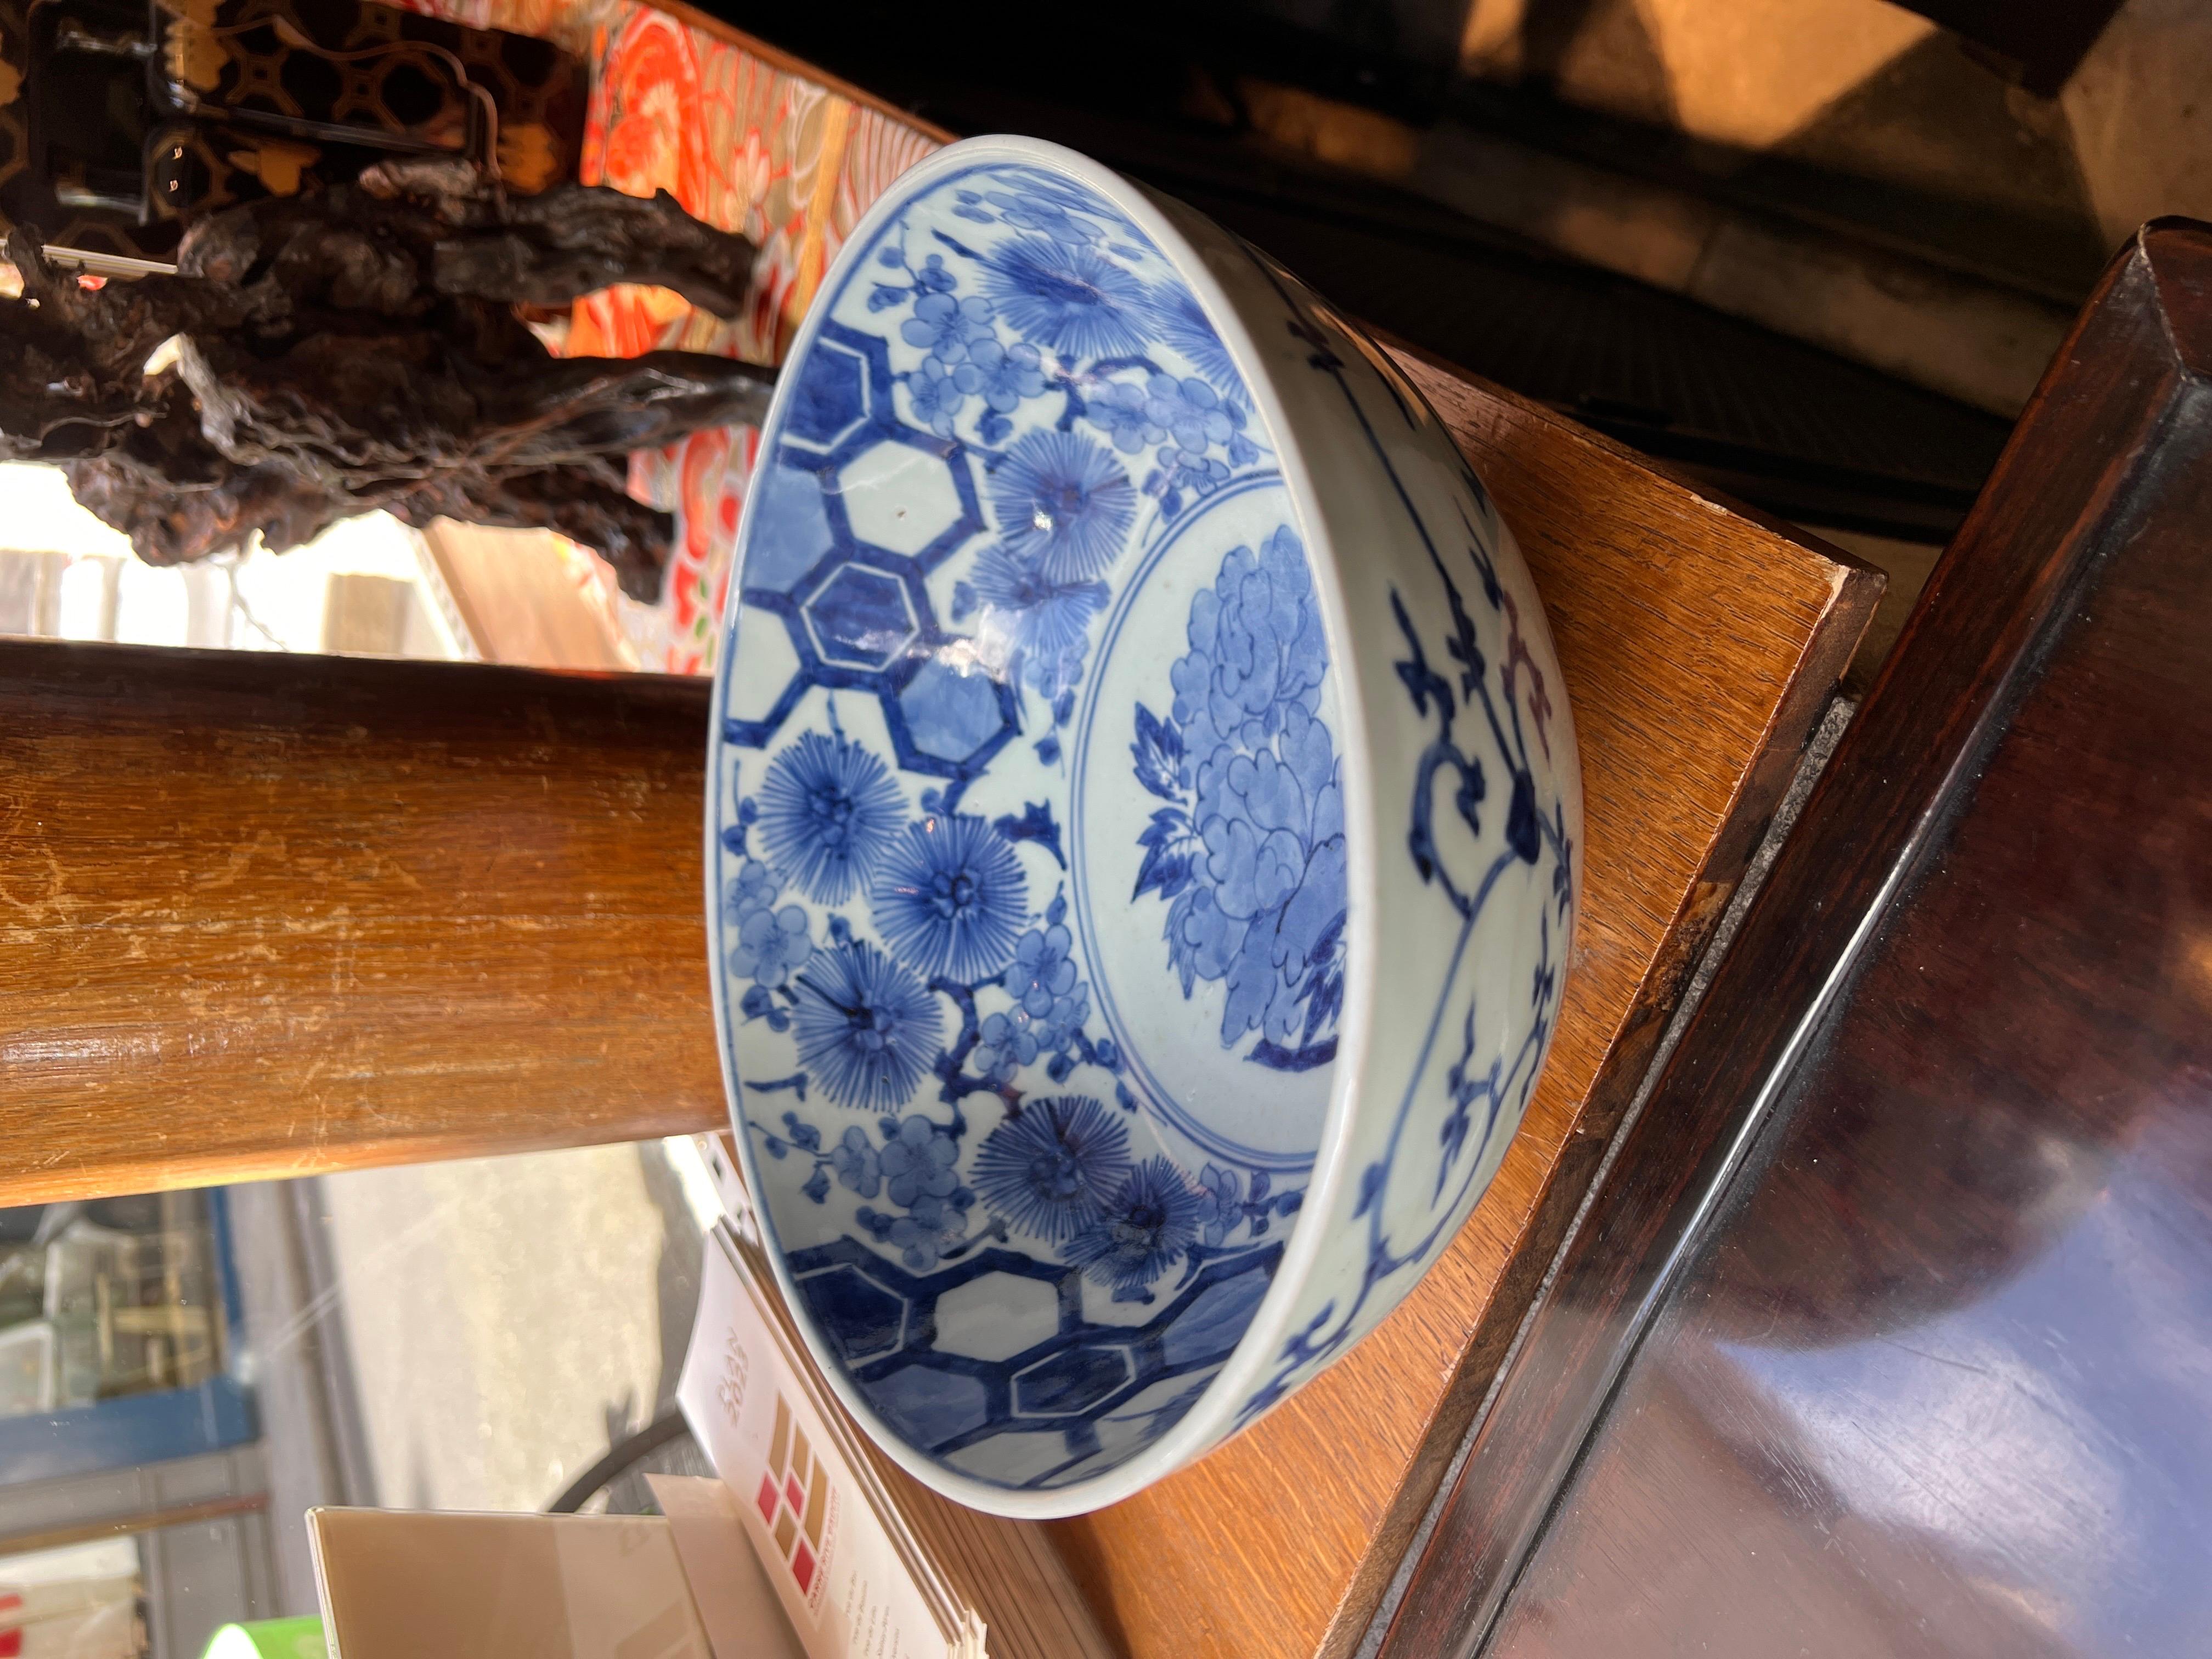 Diese exquisite große japanische Porzellanschale von Arita ist in tadellosem Zustand und weist keinerlei Restaurierungsspuren auf. Das Äußere zeigt durchgehende Karakusa-Rollen, die vom Oktopus inspiriert sind, und wird durch einen Wellenfries